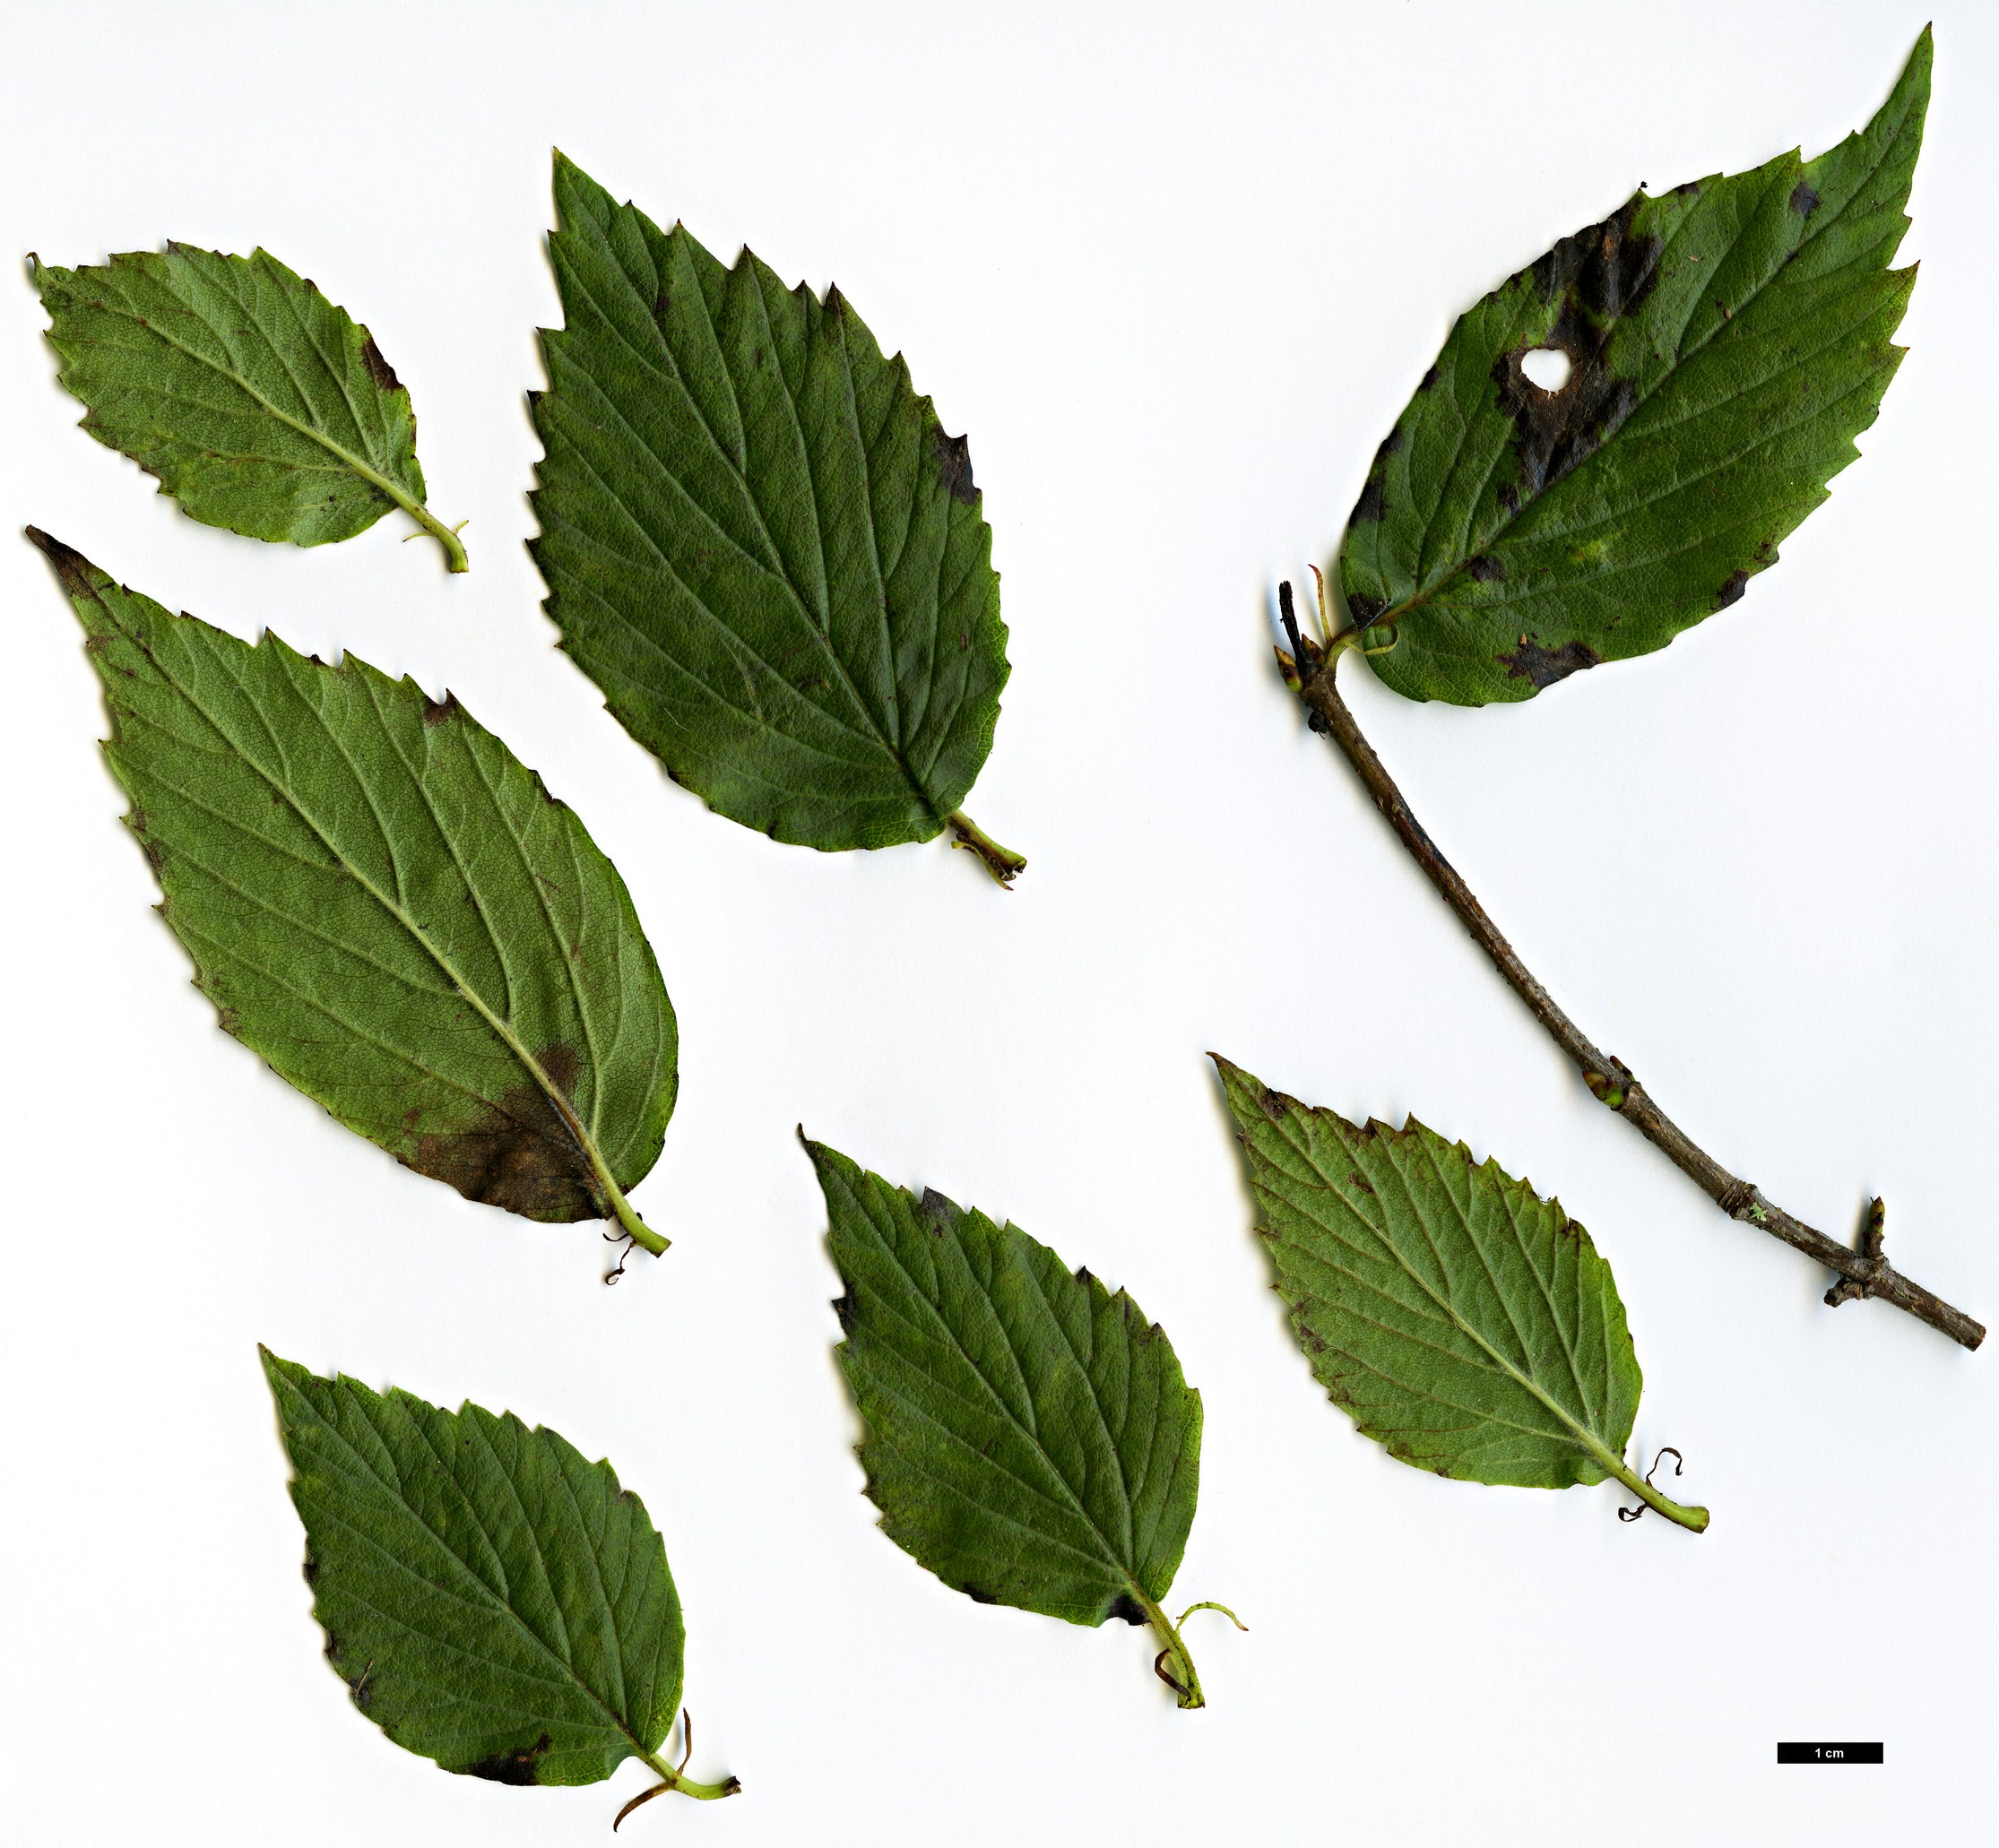 High resolution image: Family: Adoxaceae - Genus: Viburnum - Taxon: rafinesquianum